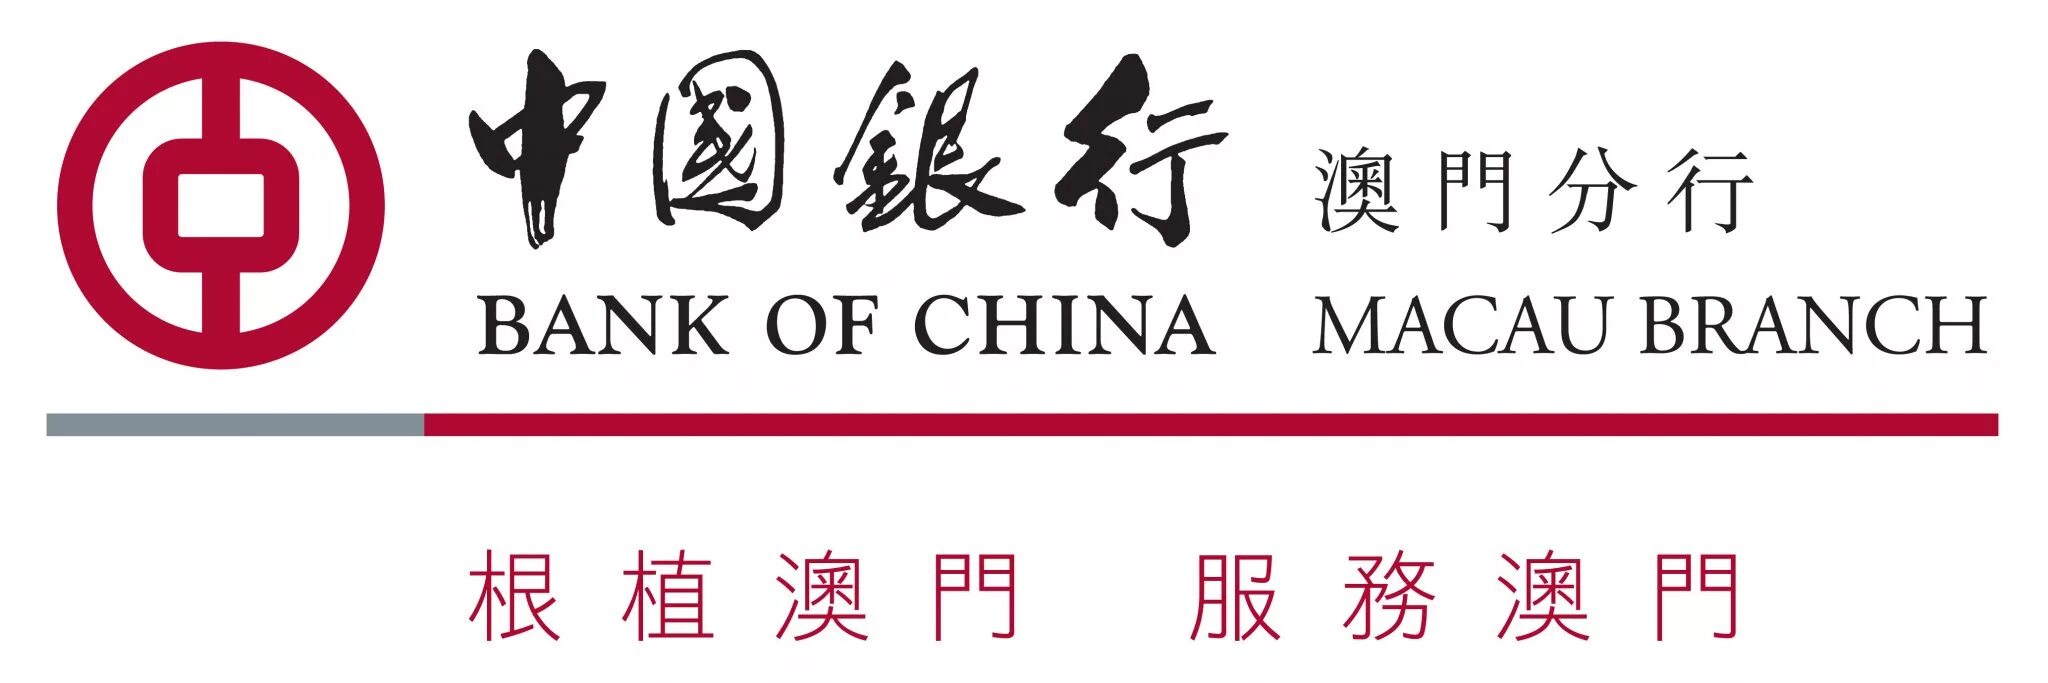 Китайские логотипы банков. Банк Bank of China. Банк оф Чайна логотип. Народный банк Китая логотип. Сайт банка китая